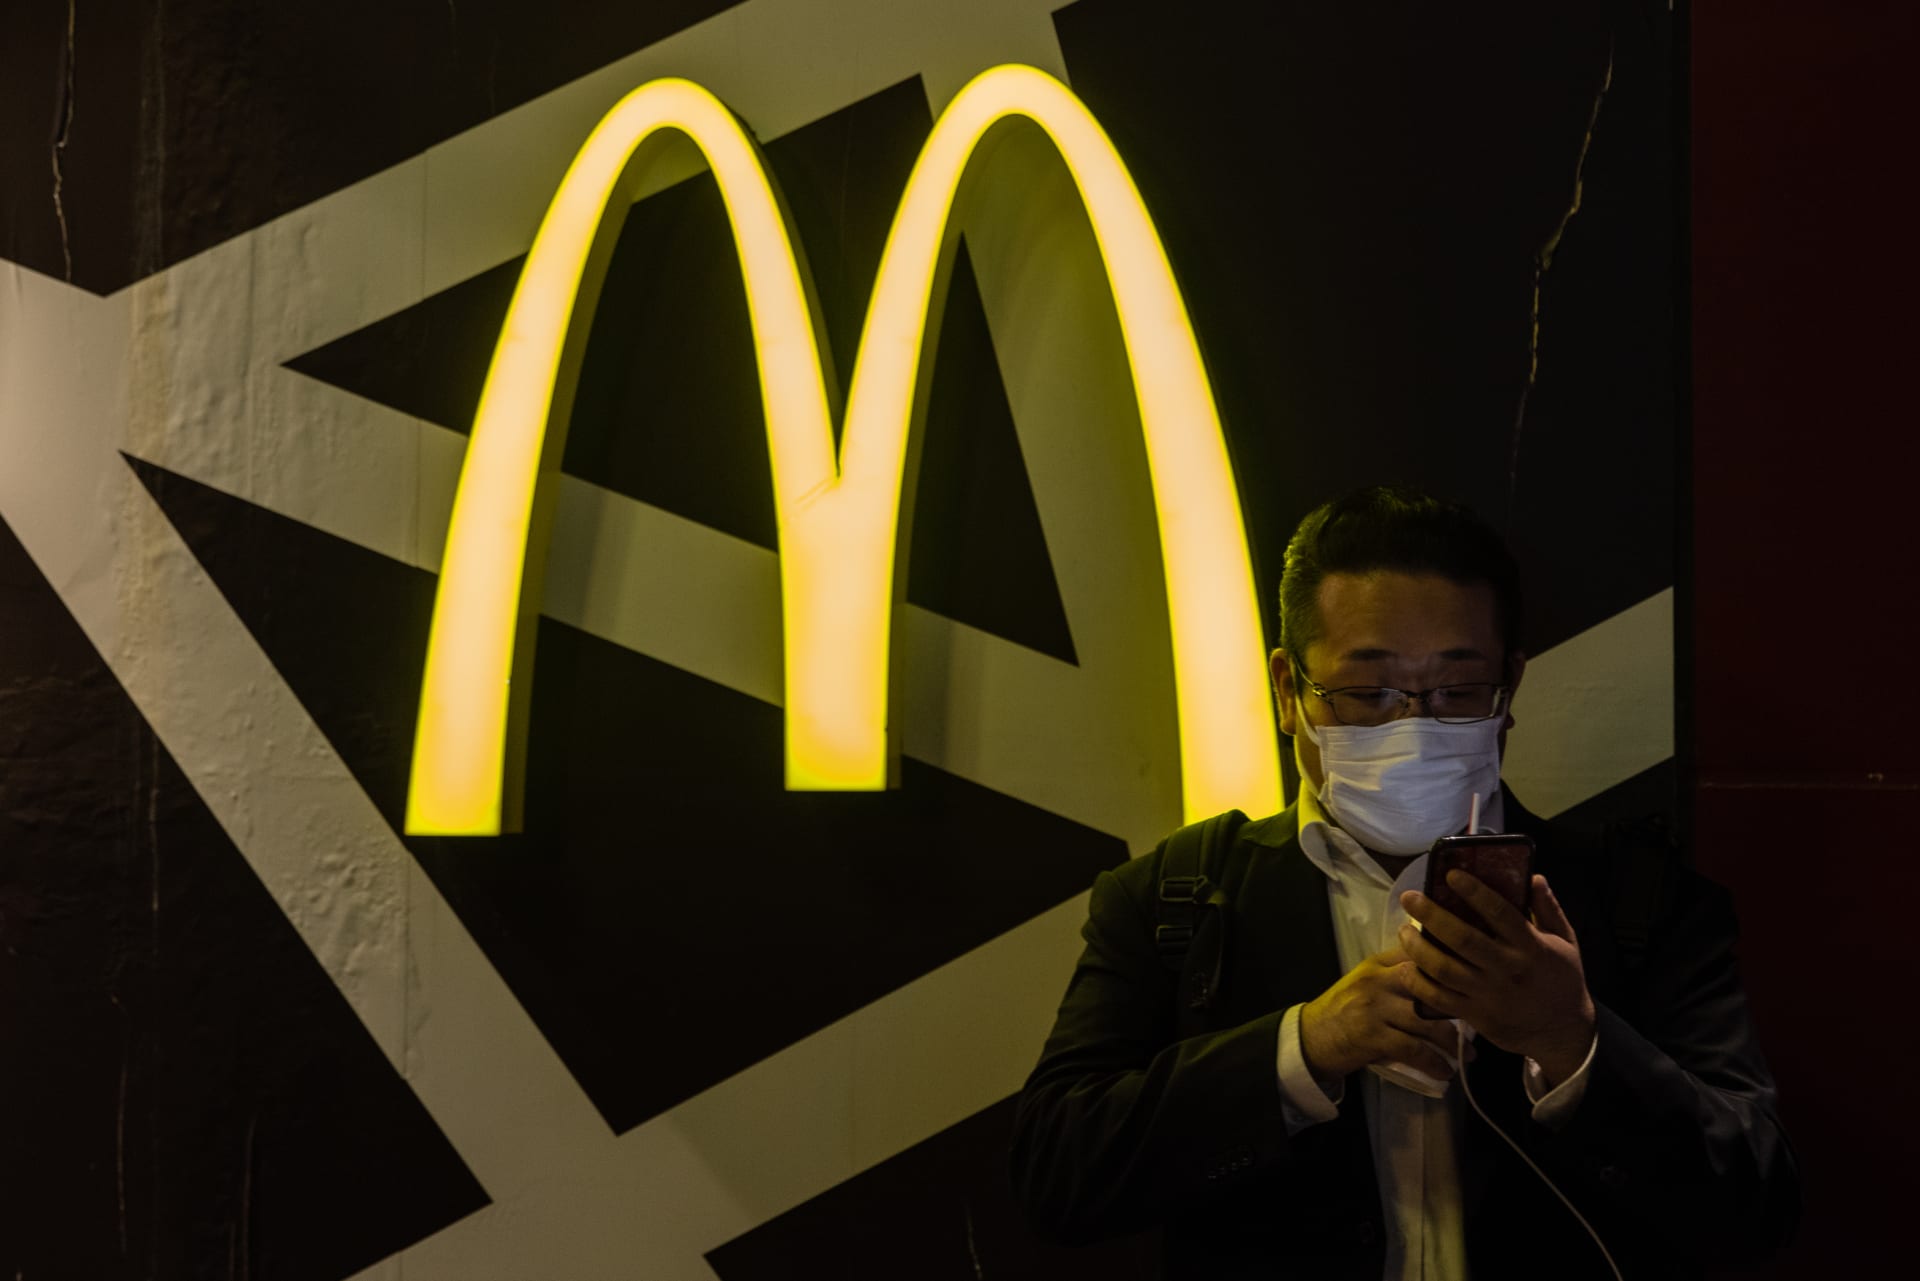 ماكدونالدز في السعودية يعلق على حادثة الاعتداء على موظفيه بعد تداول فيديو مثير للجدل